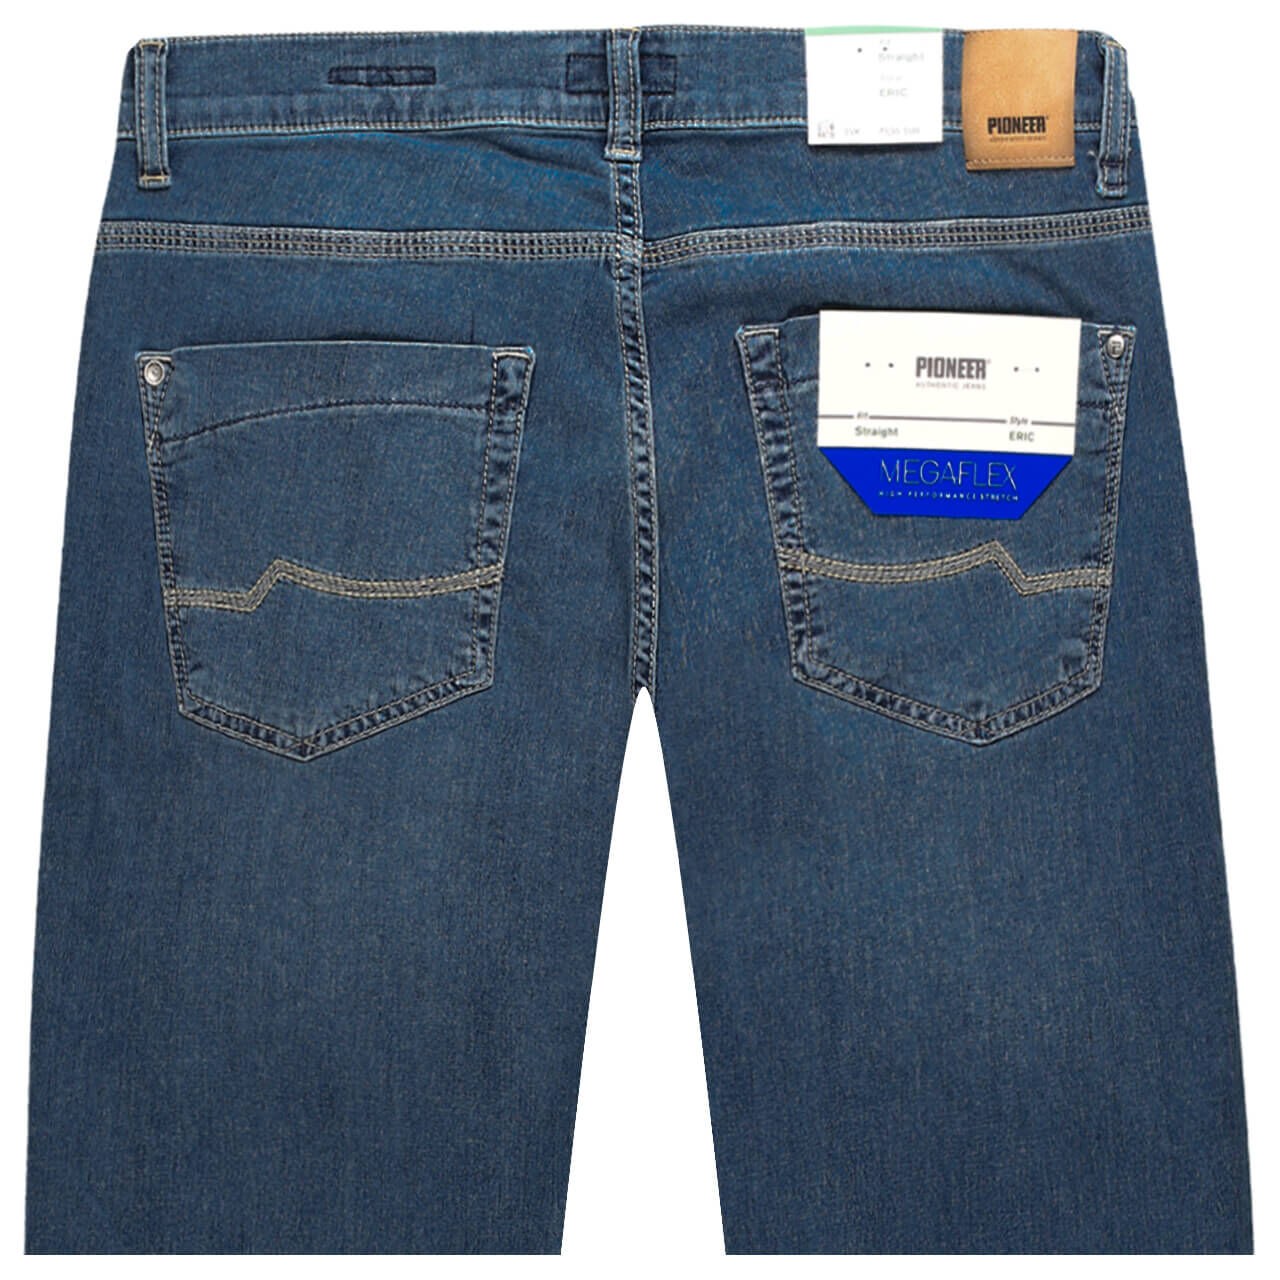 Pioneer Jeans Eric Megaflex für Herren in Blau angewaschen, FarbNr.. 6832